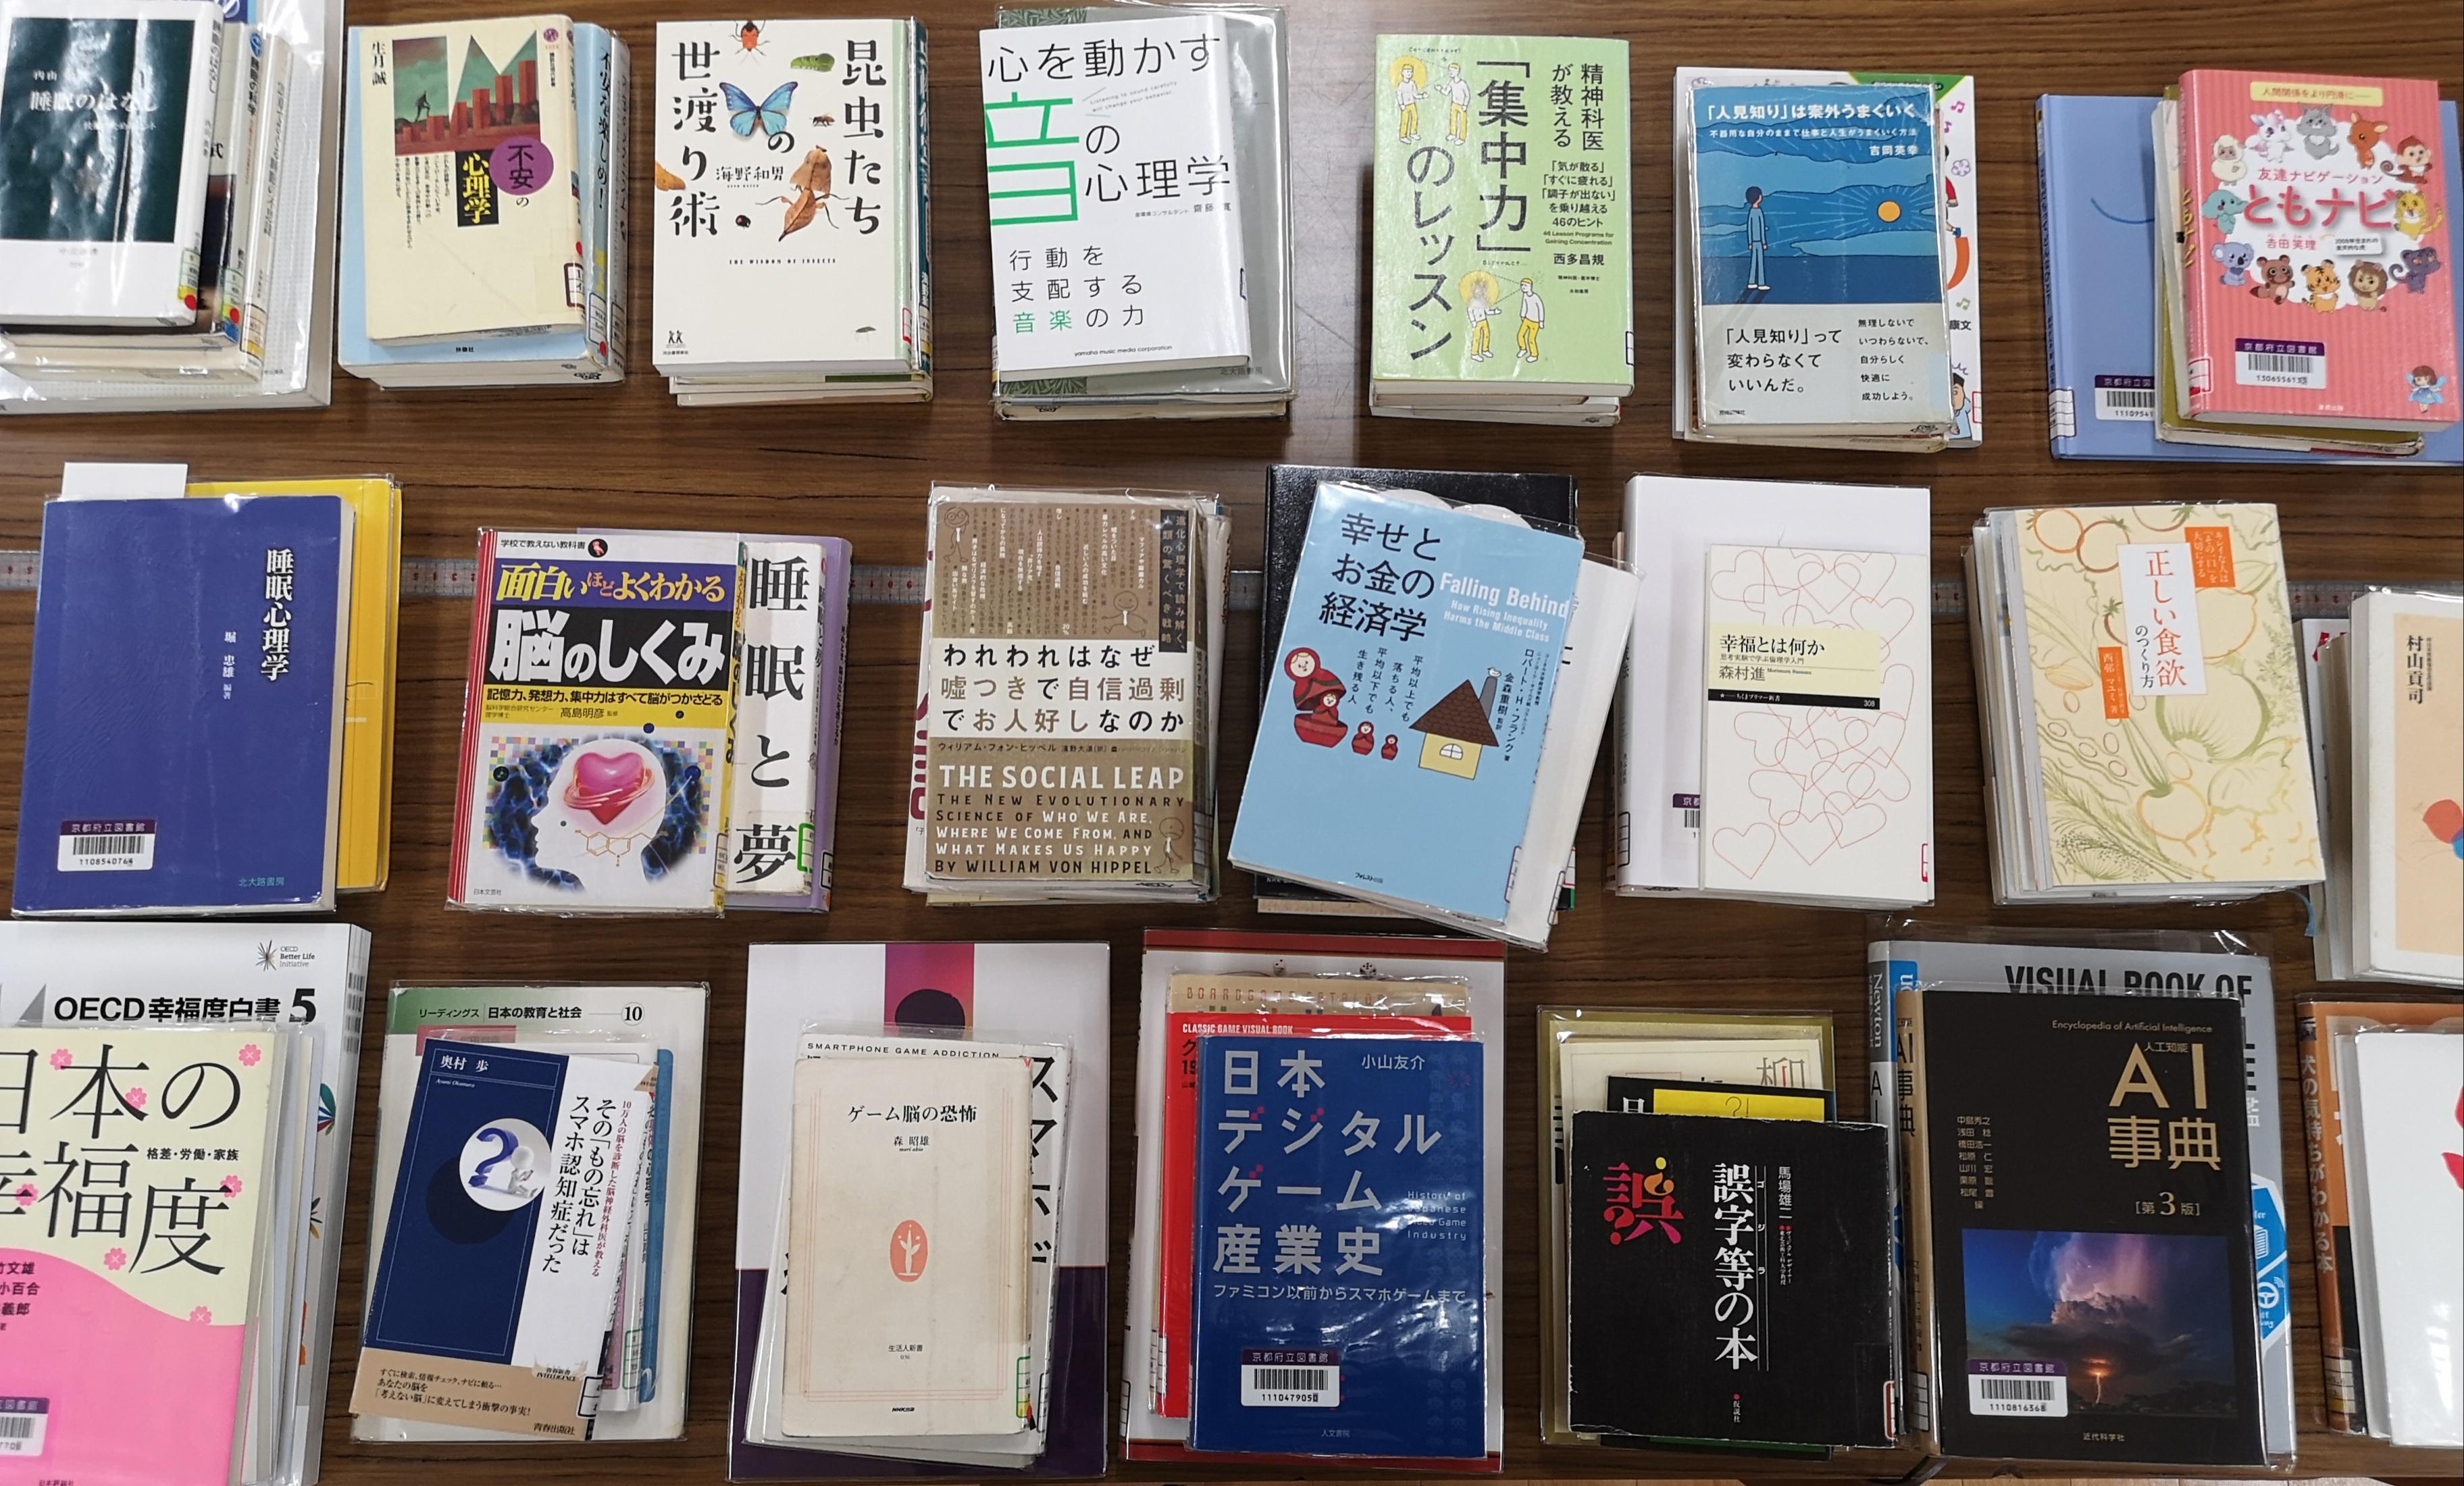 http://www.kyoto-be.ne.jp/tangoryokufuu-hs/mt/library-k/images/IMG_20211116_130136.jpg